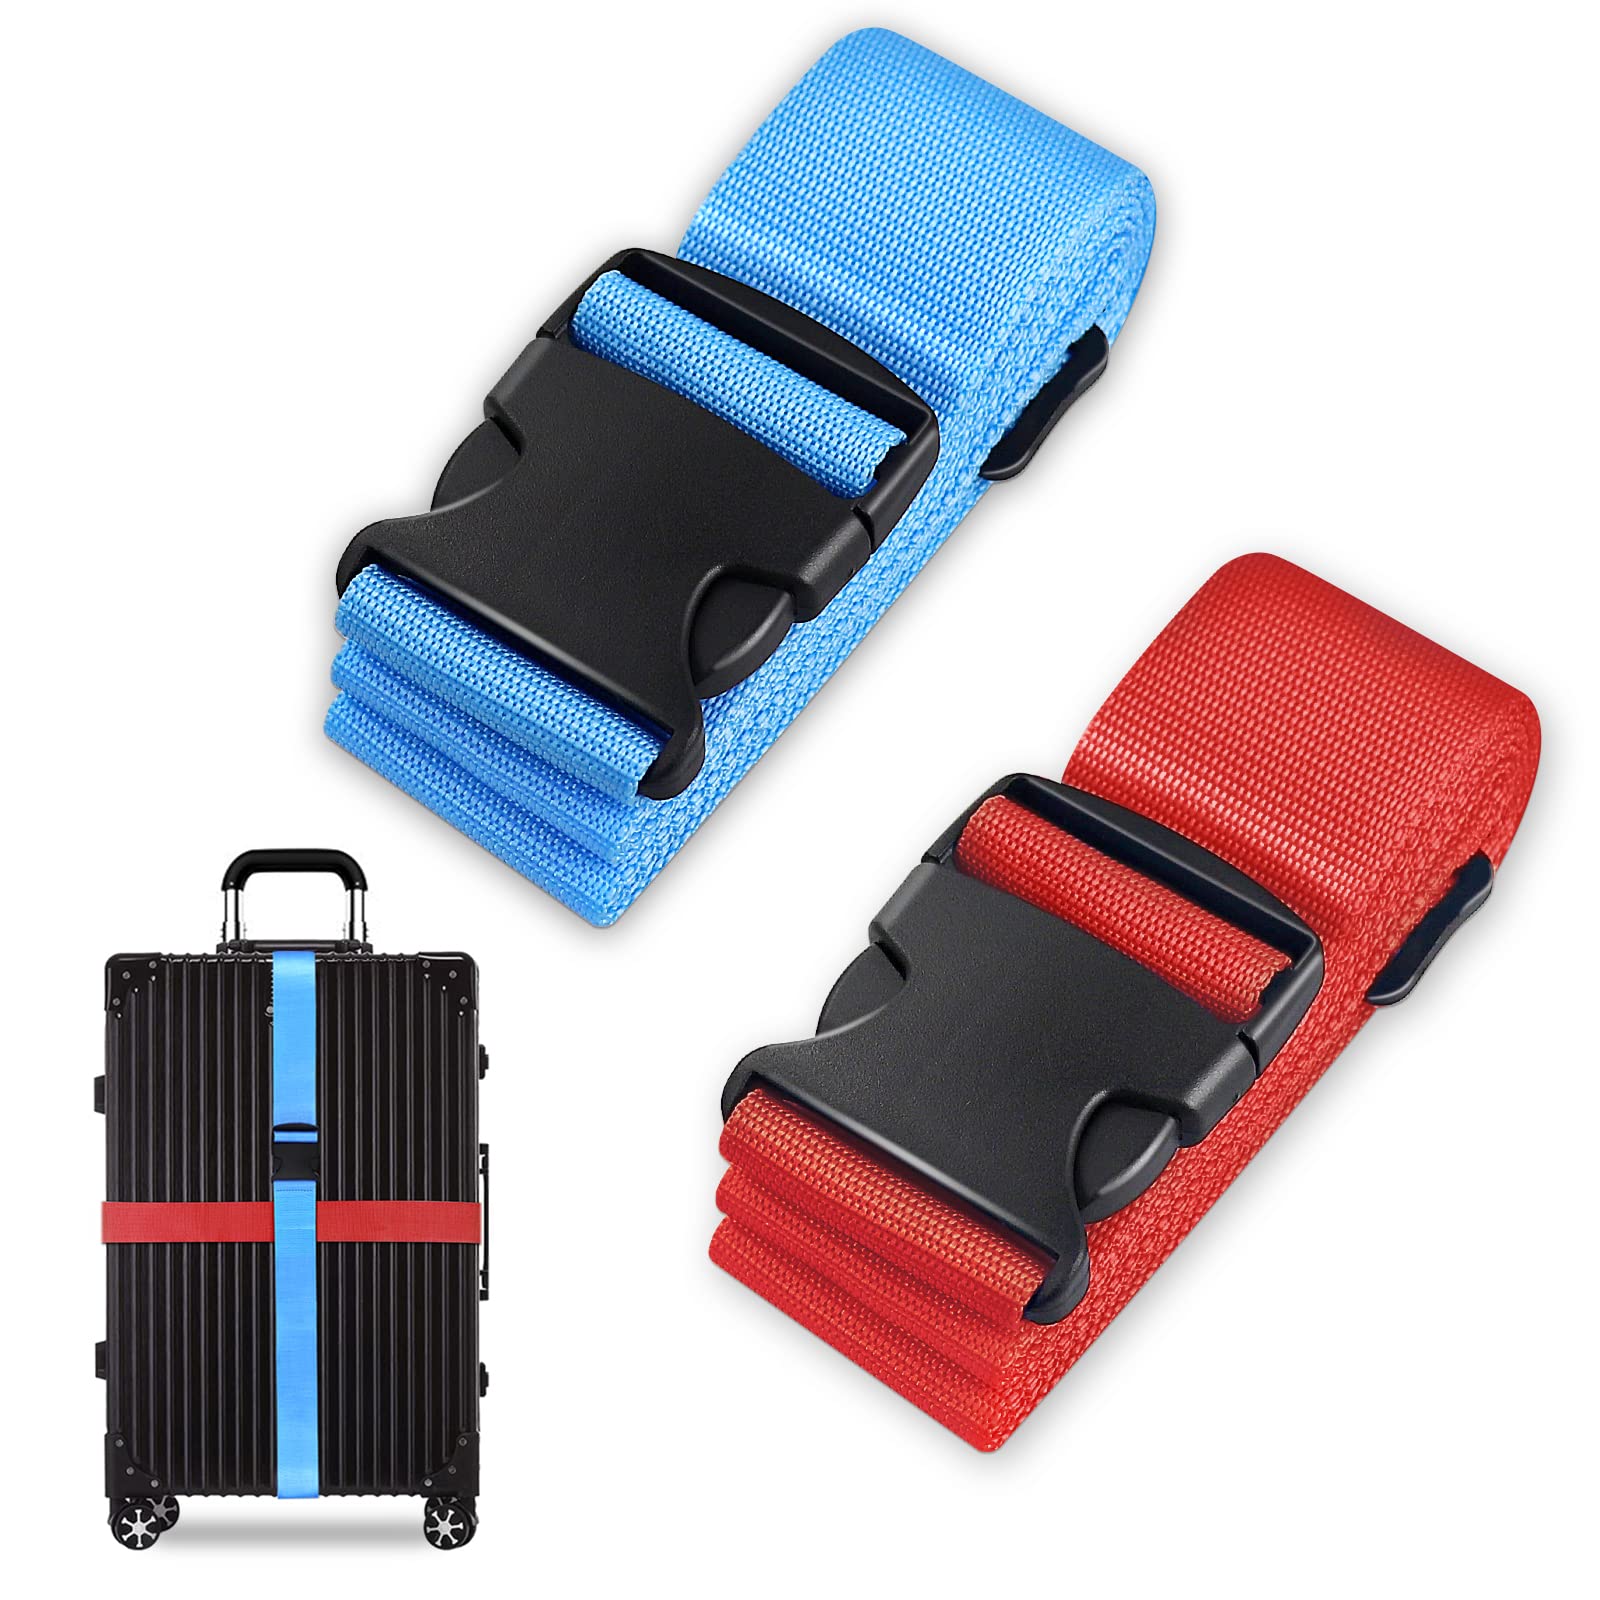 Koffergurt Set, gepäckband, kofferbänder, koffergurte Personalisierte Identifikation Verstellbare Rutschfestes Reisezube (Blau Rot, 2 Stück Set) von Grantop